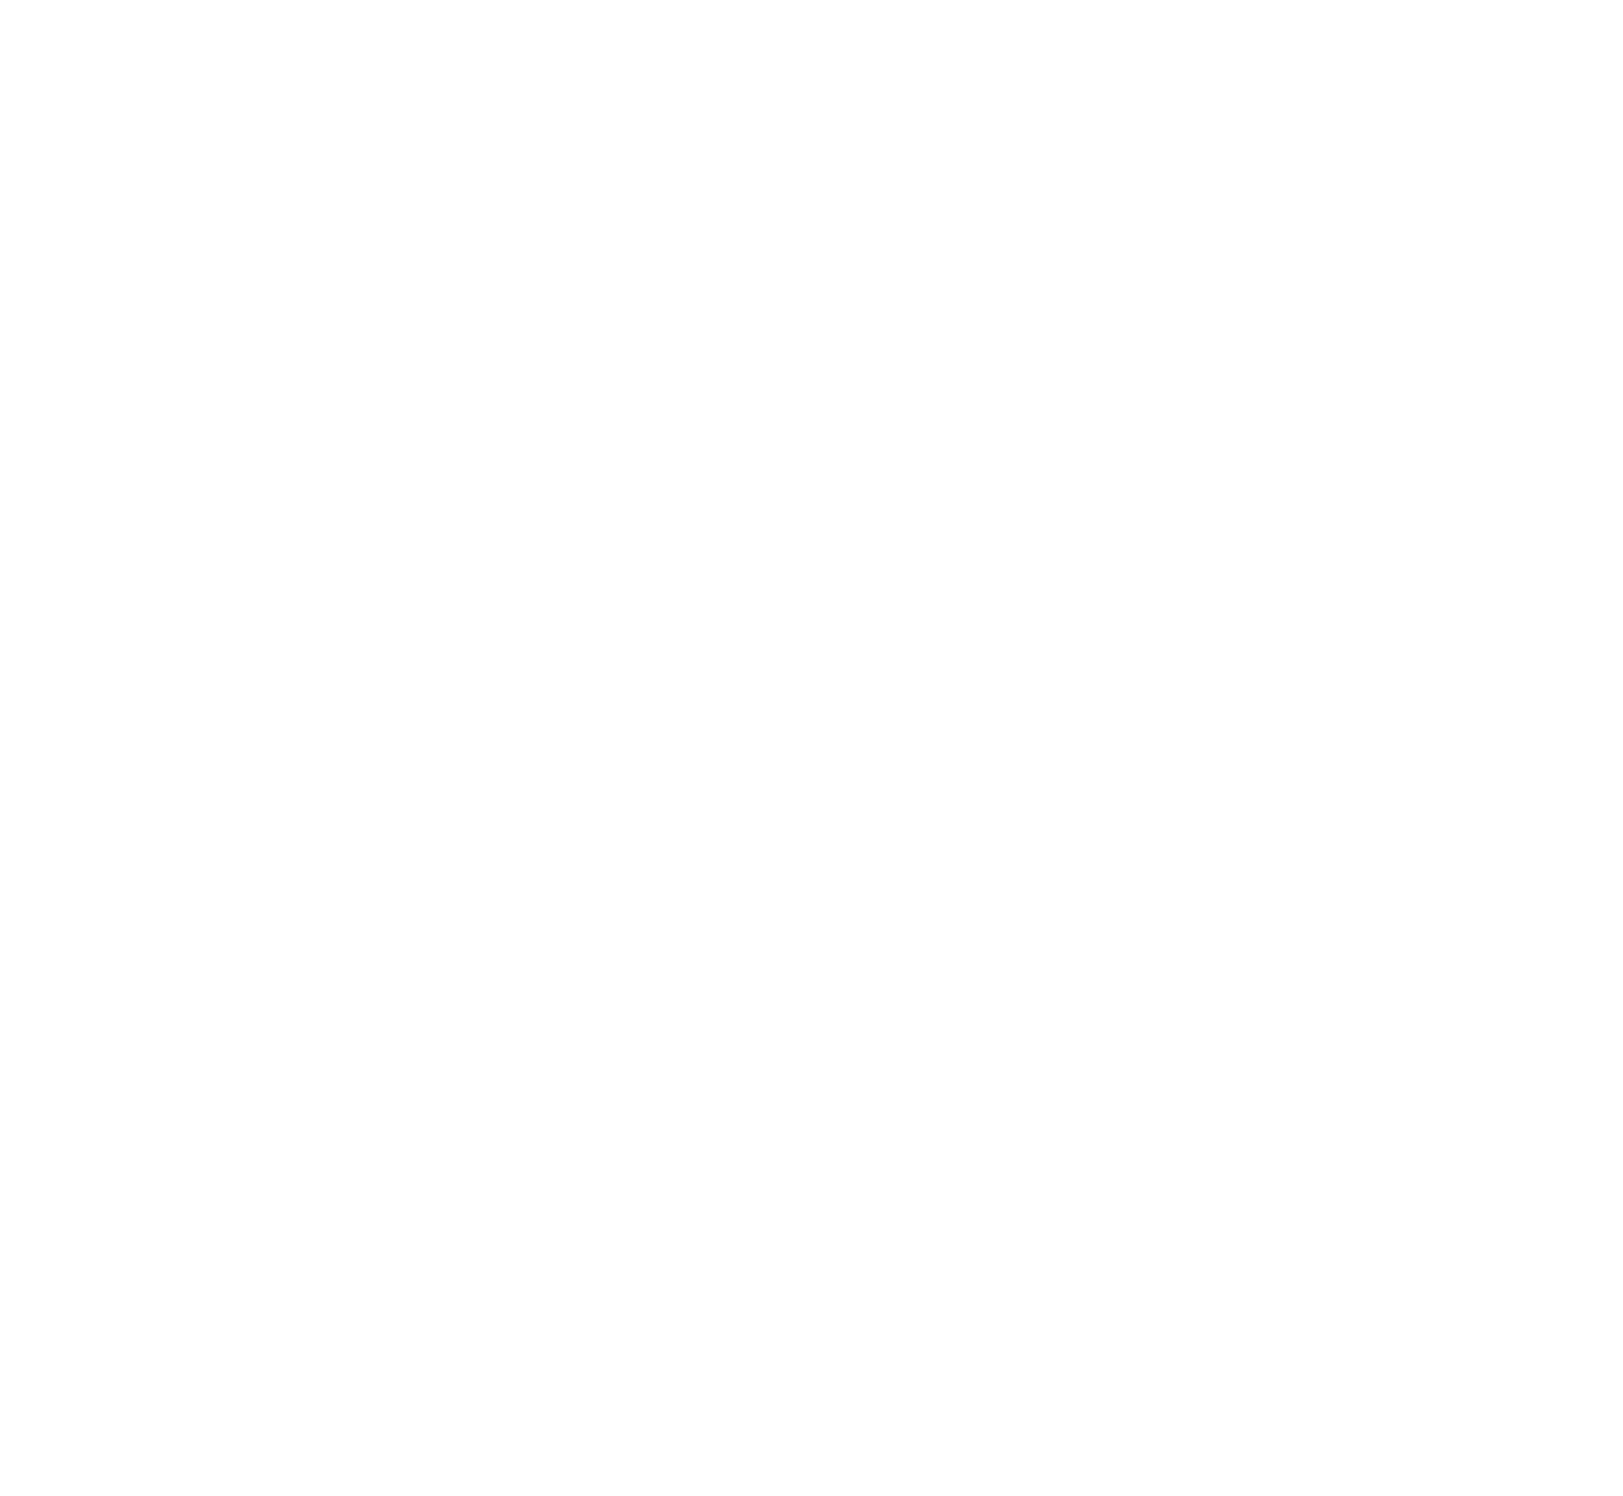 clover-grass logo